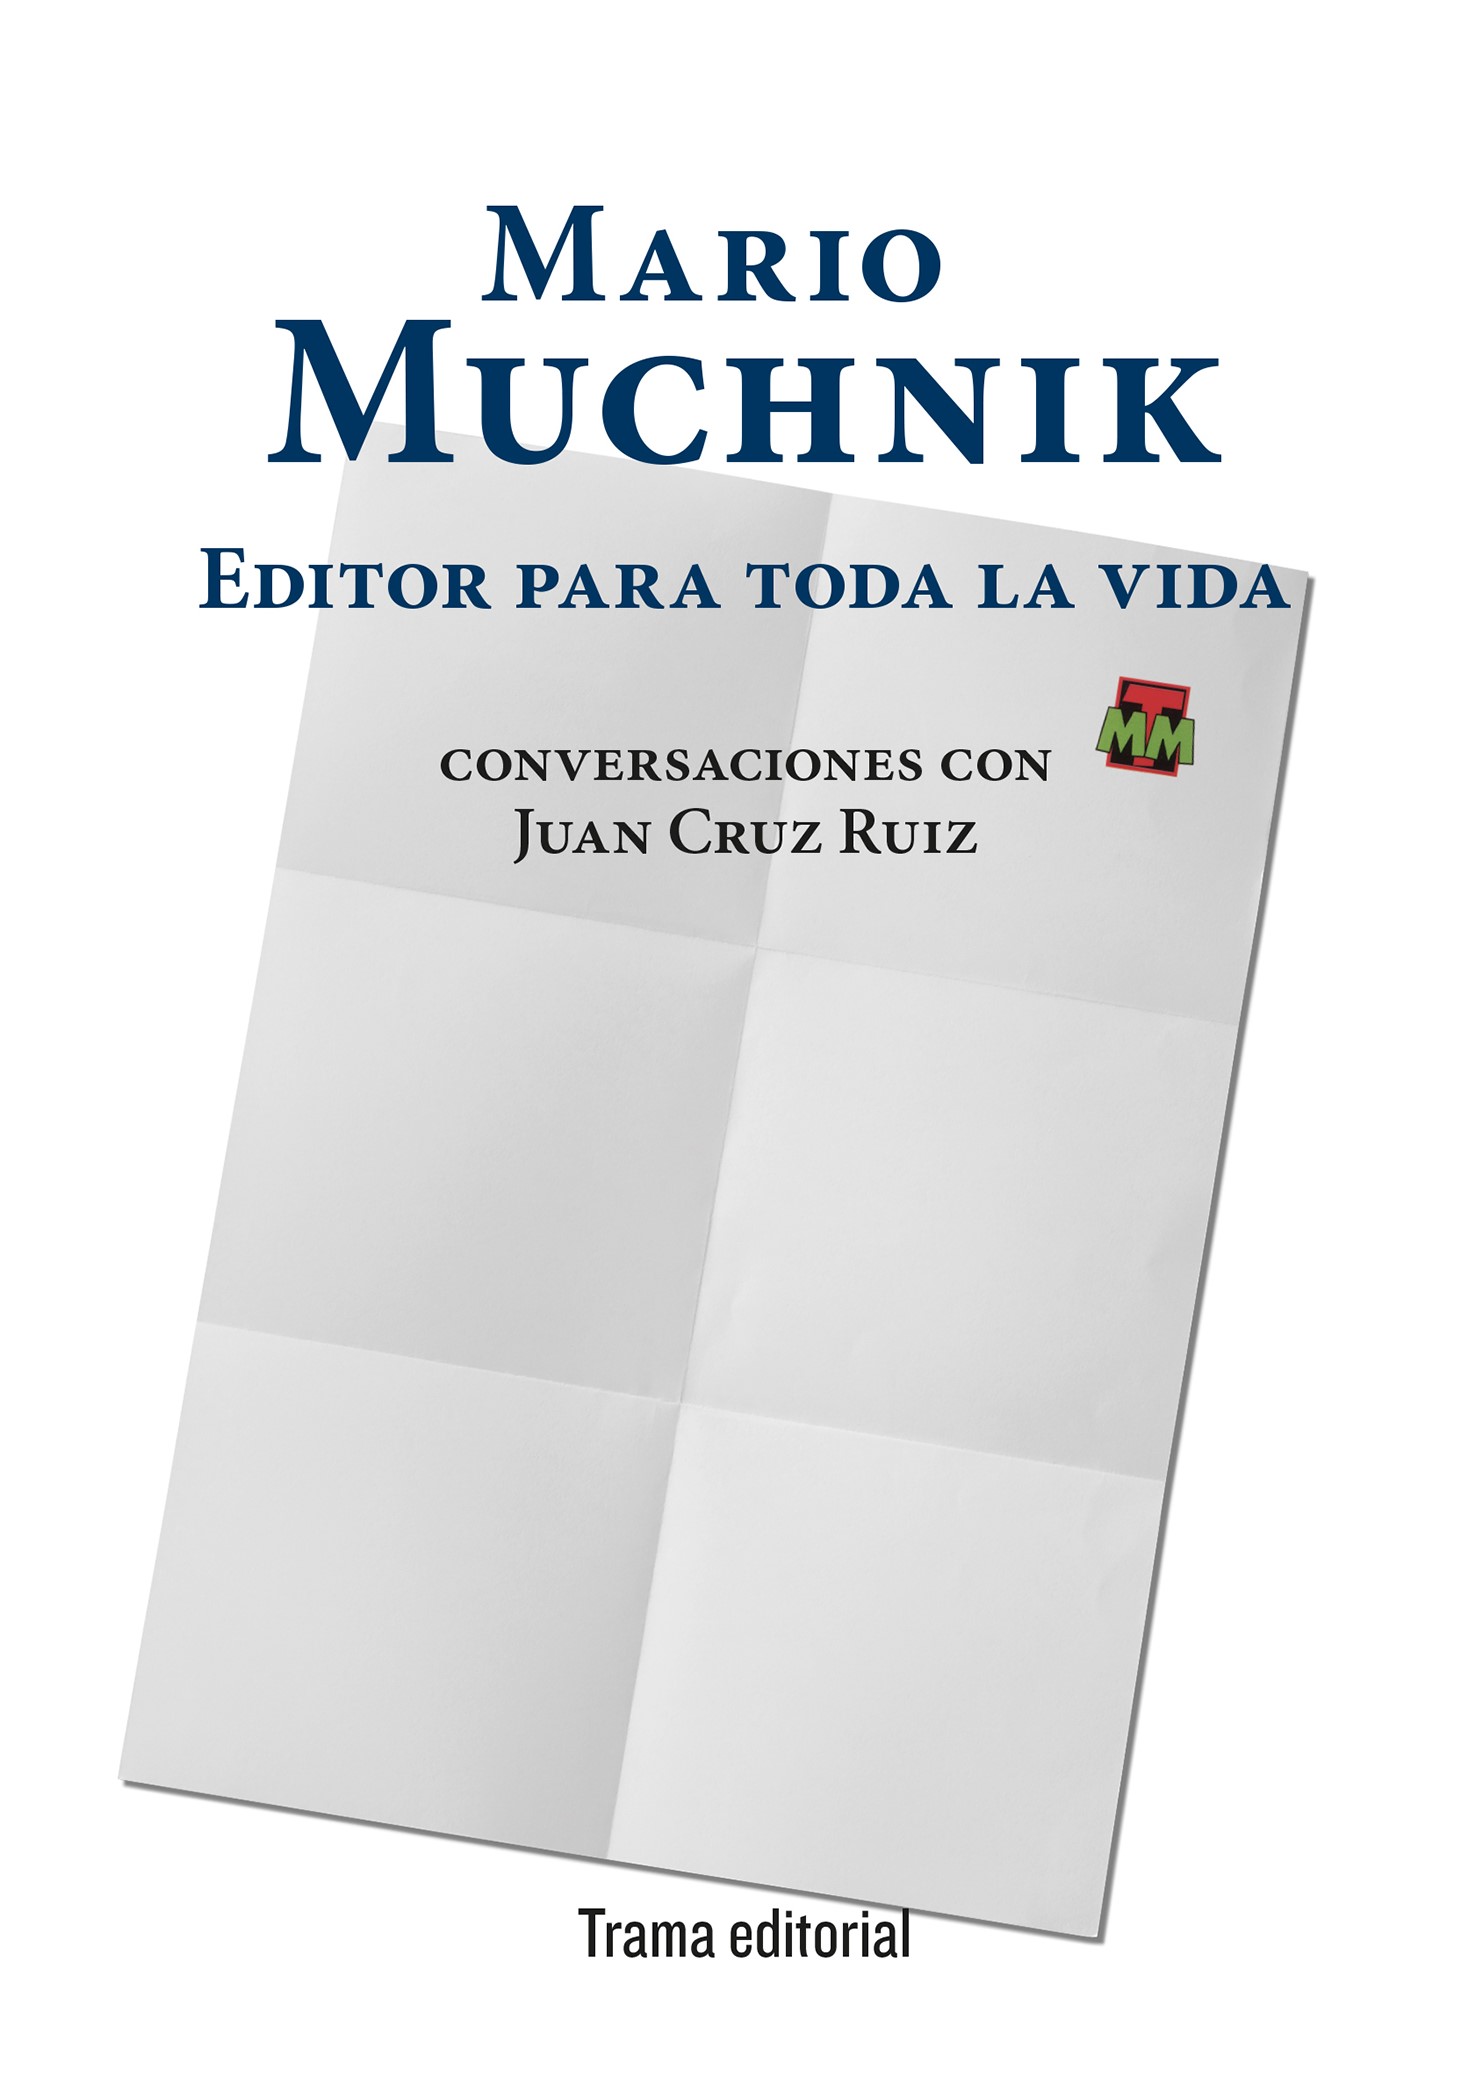 Mario Muchnik: editor para toda la vida. 9788412328325